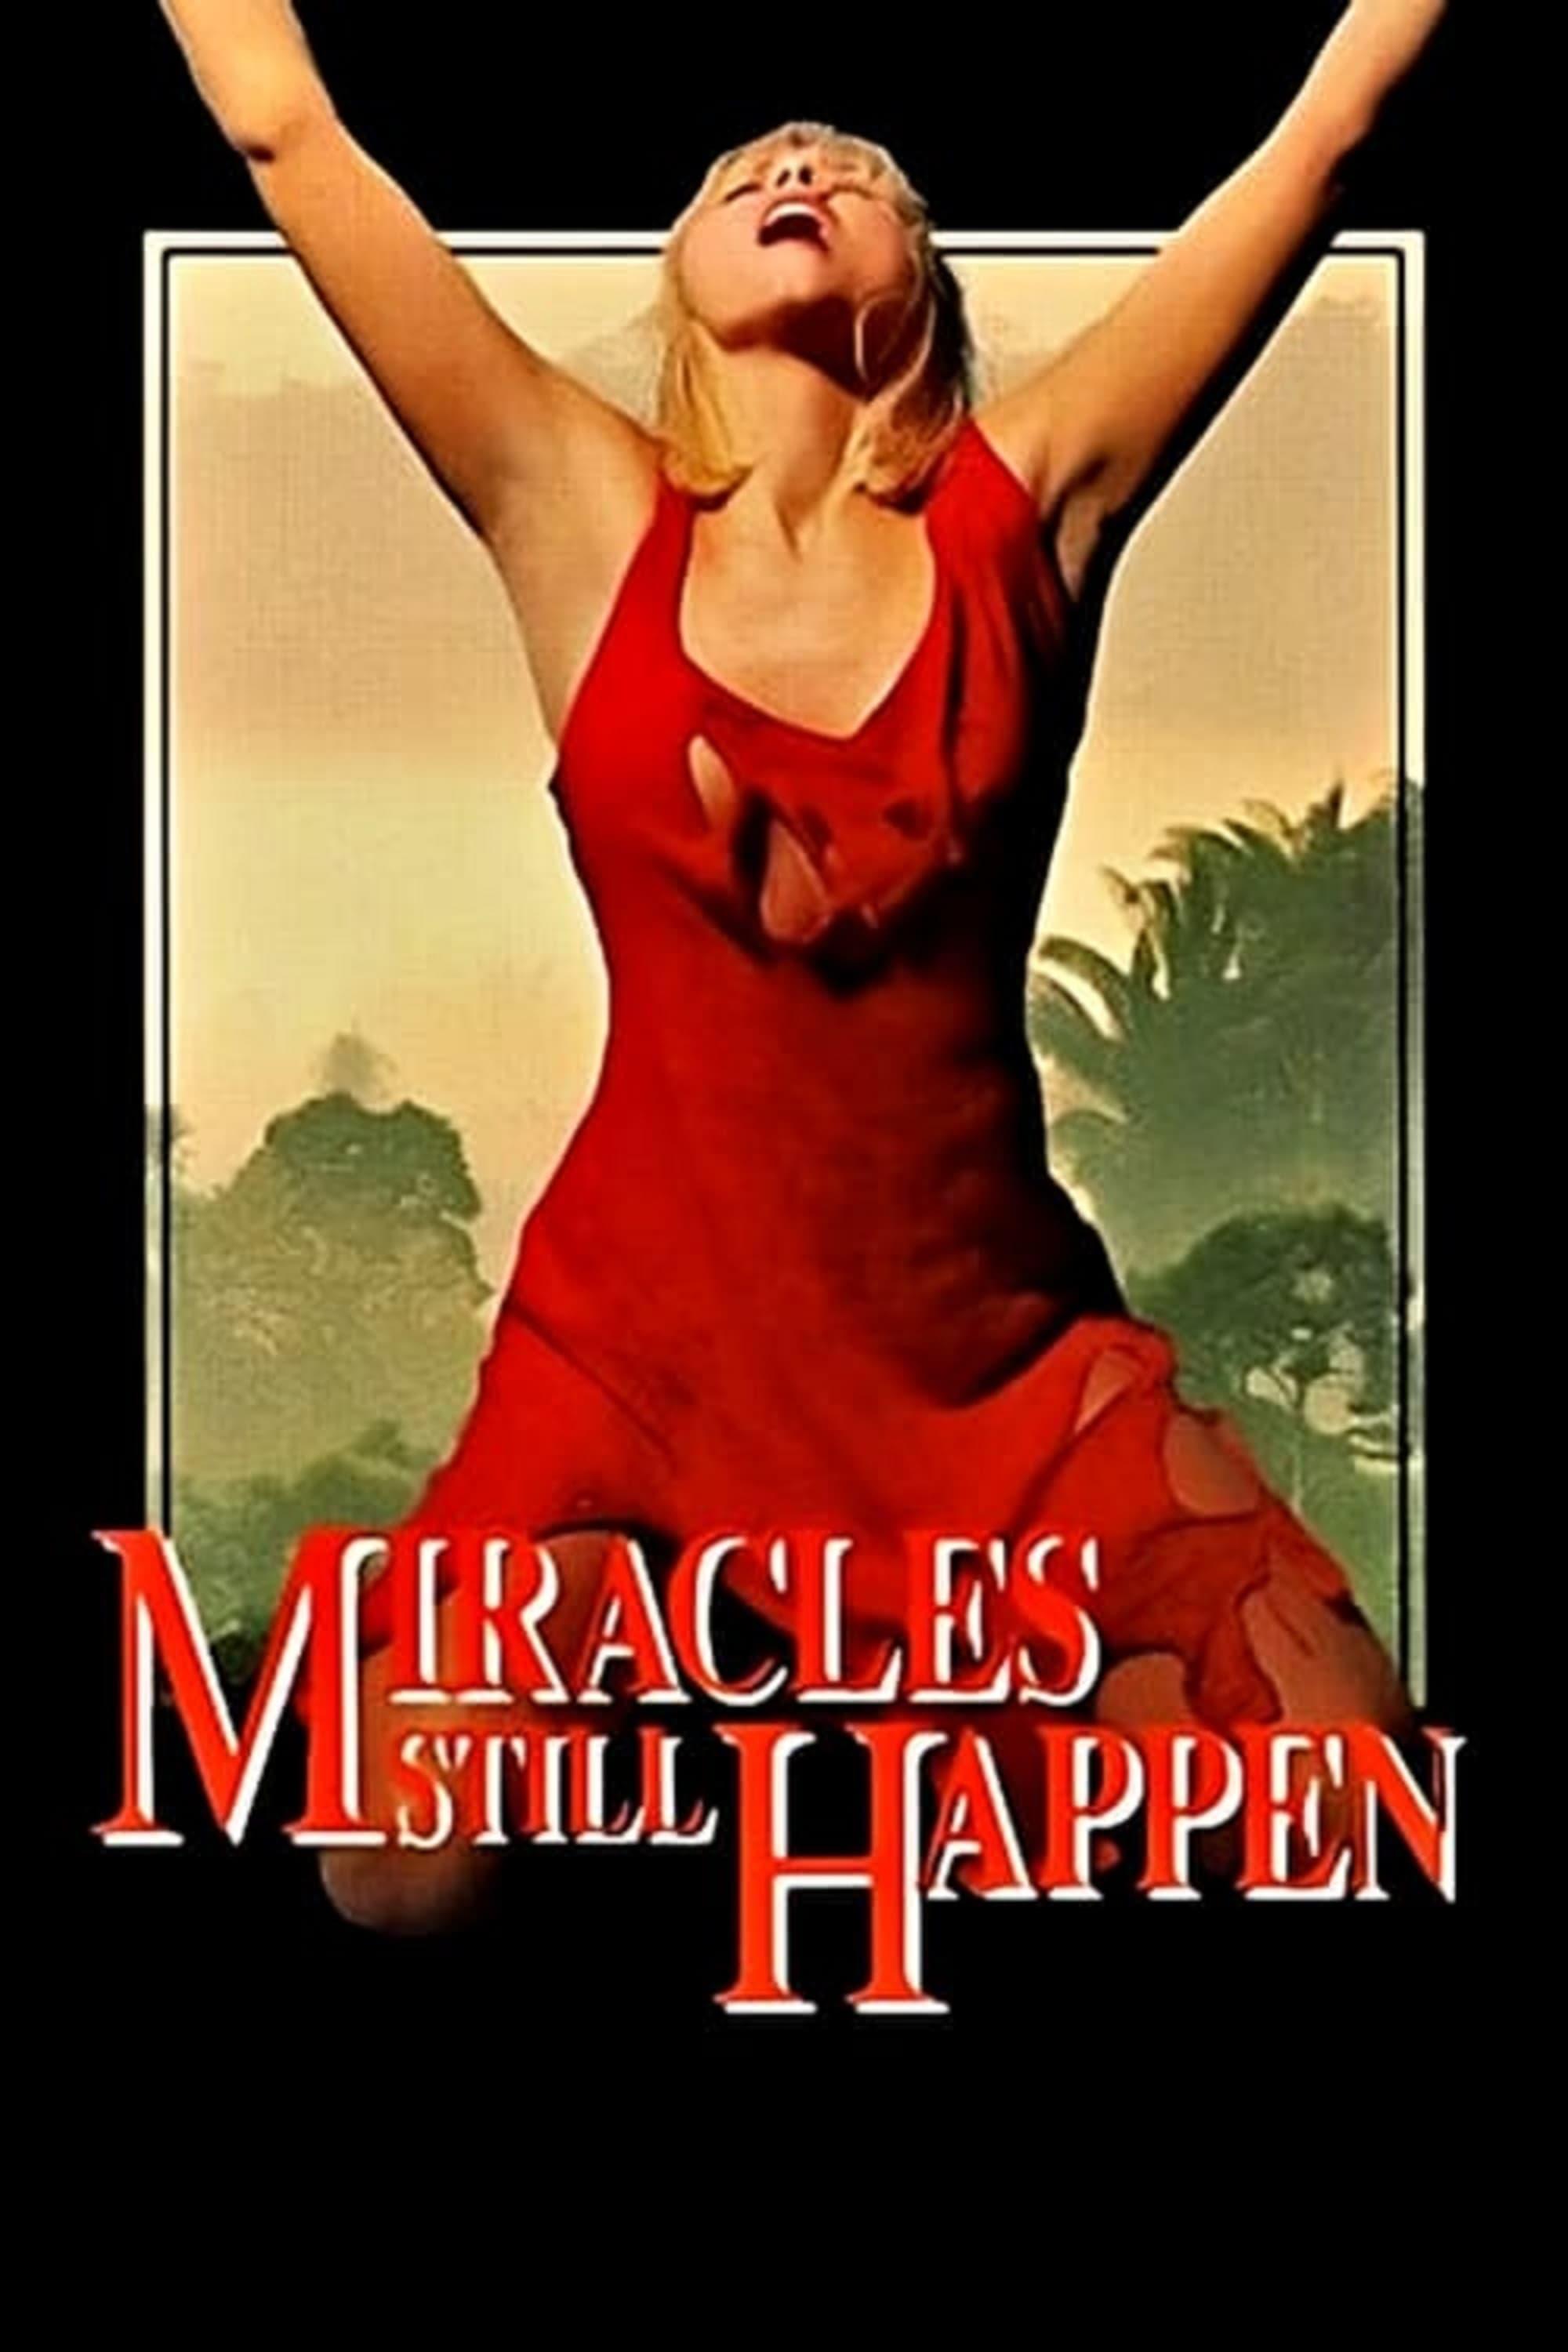 Miracles Still Happen poster